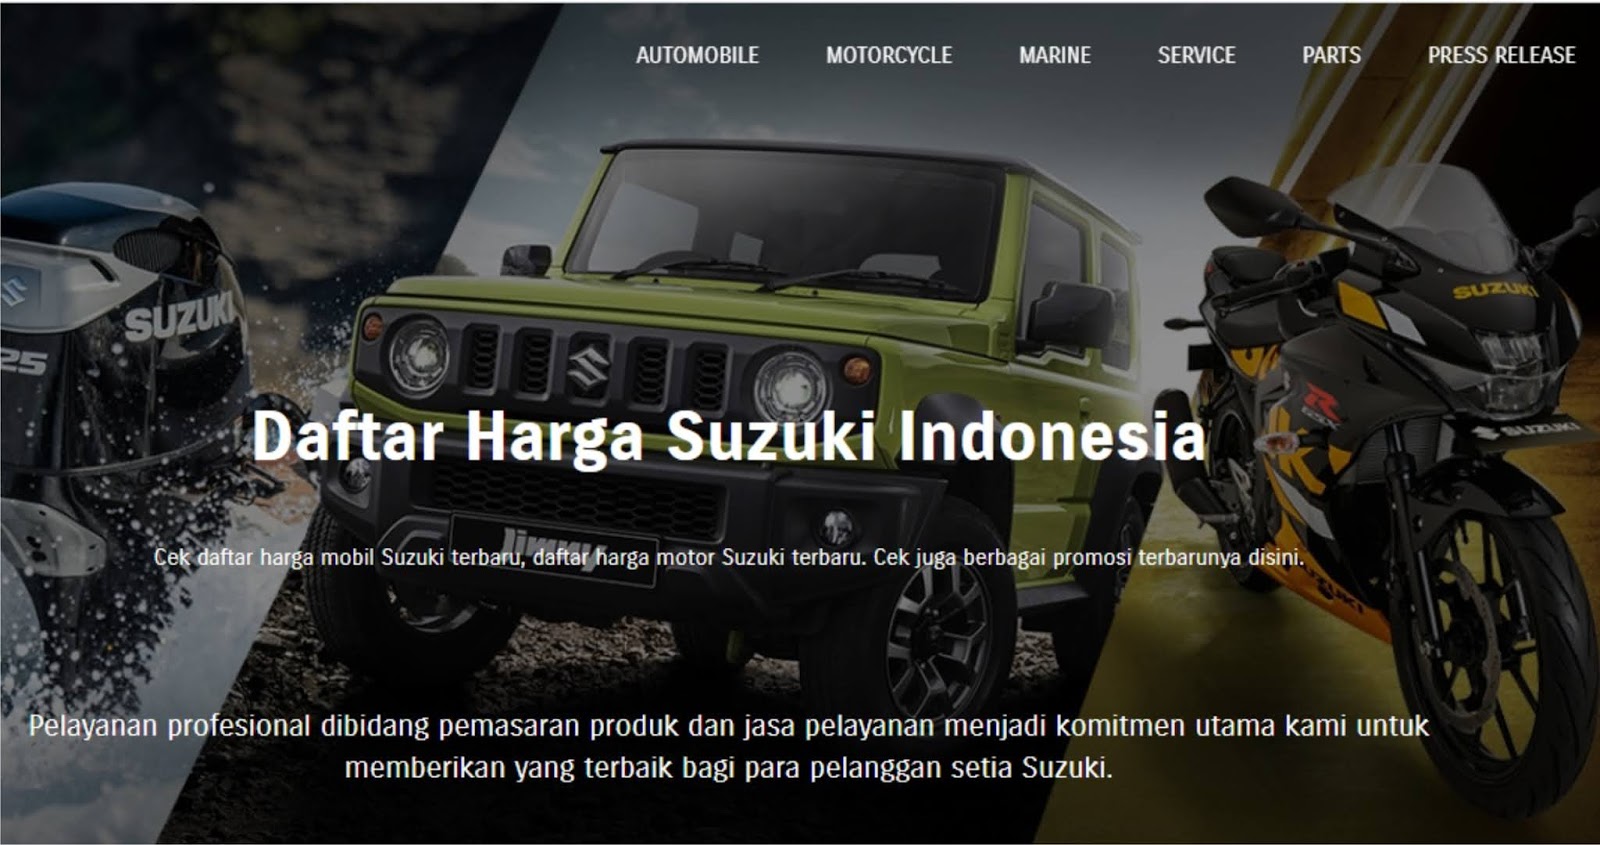 Daftar Harga Mobil Suzuki Terbaru Beserta Sedikit Ulasannya